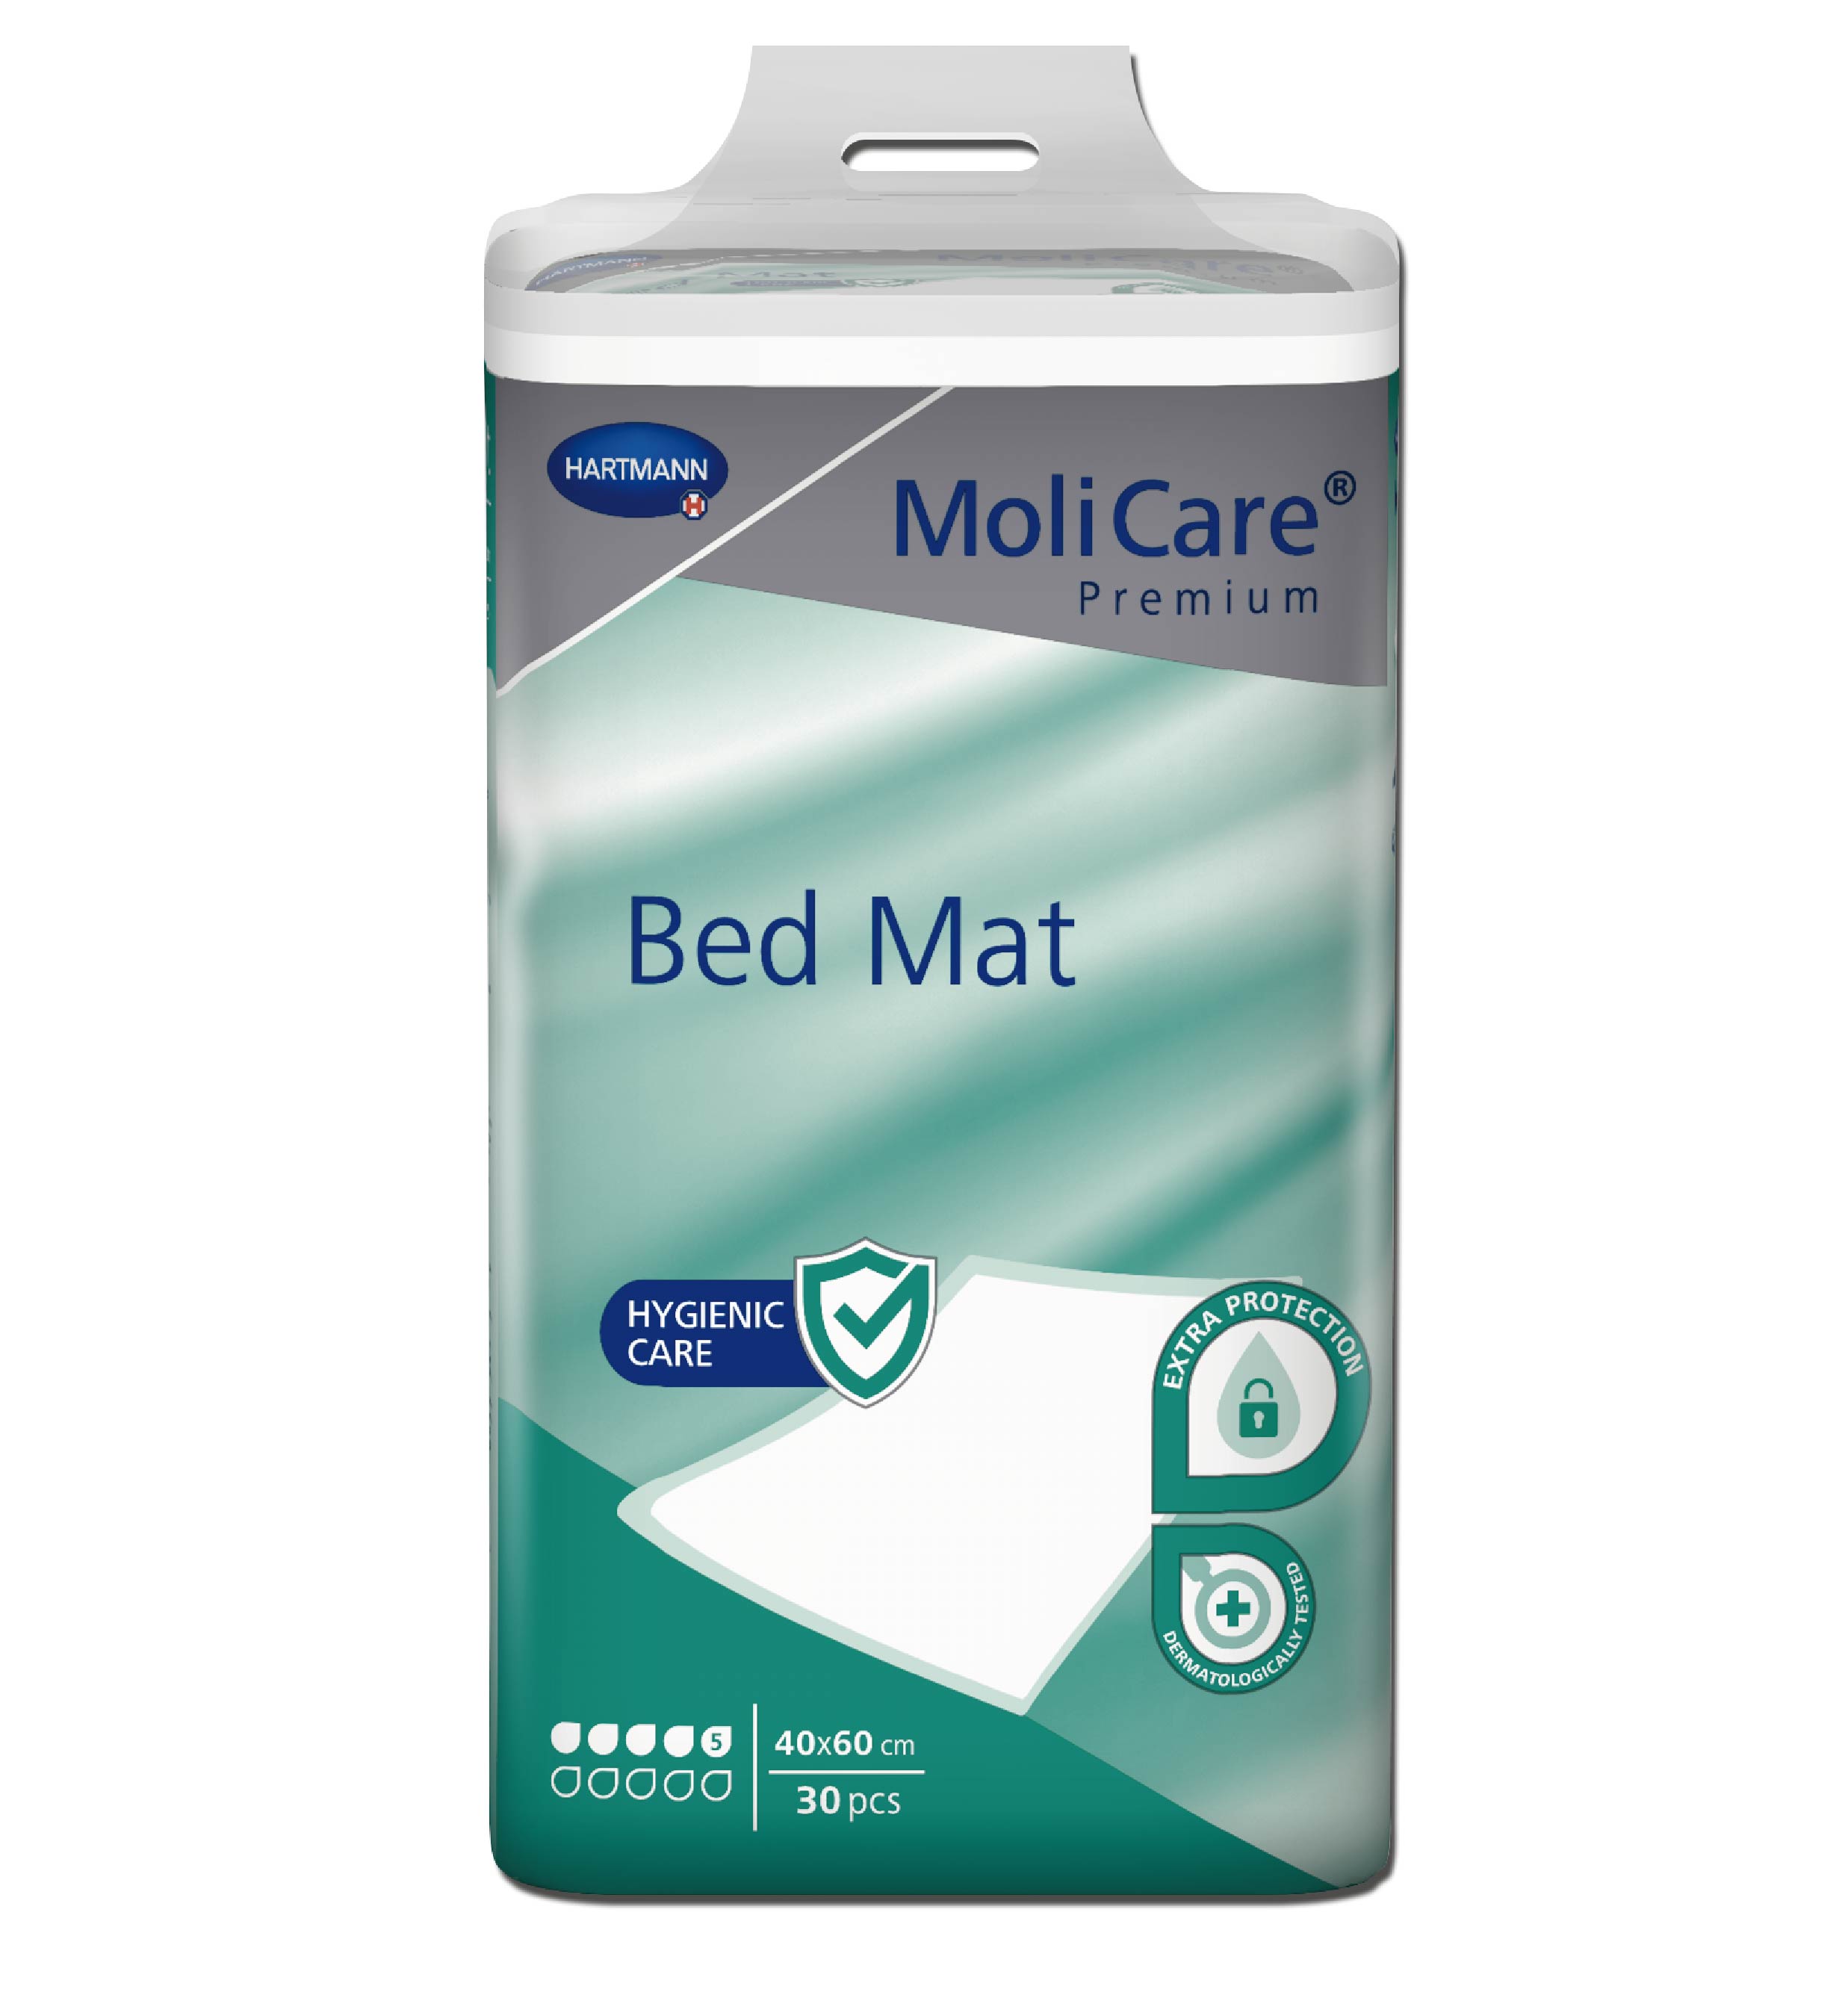 MoliCare Premium Bed Mat 40x60cm 5 drops 180